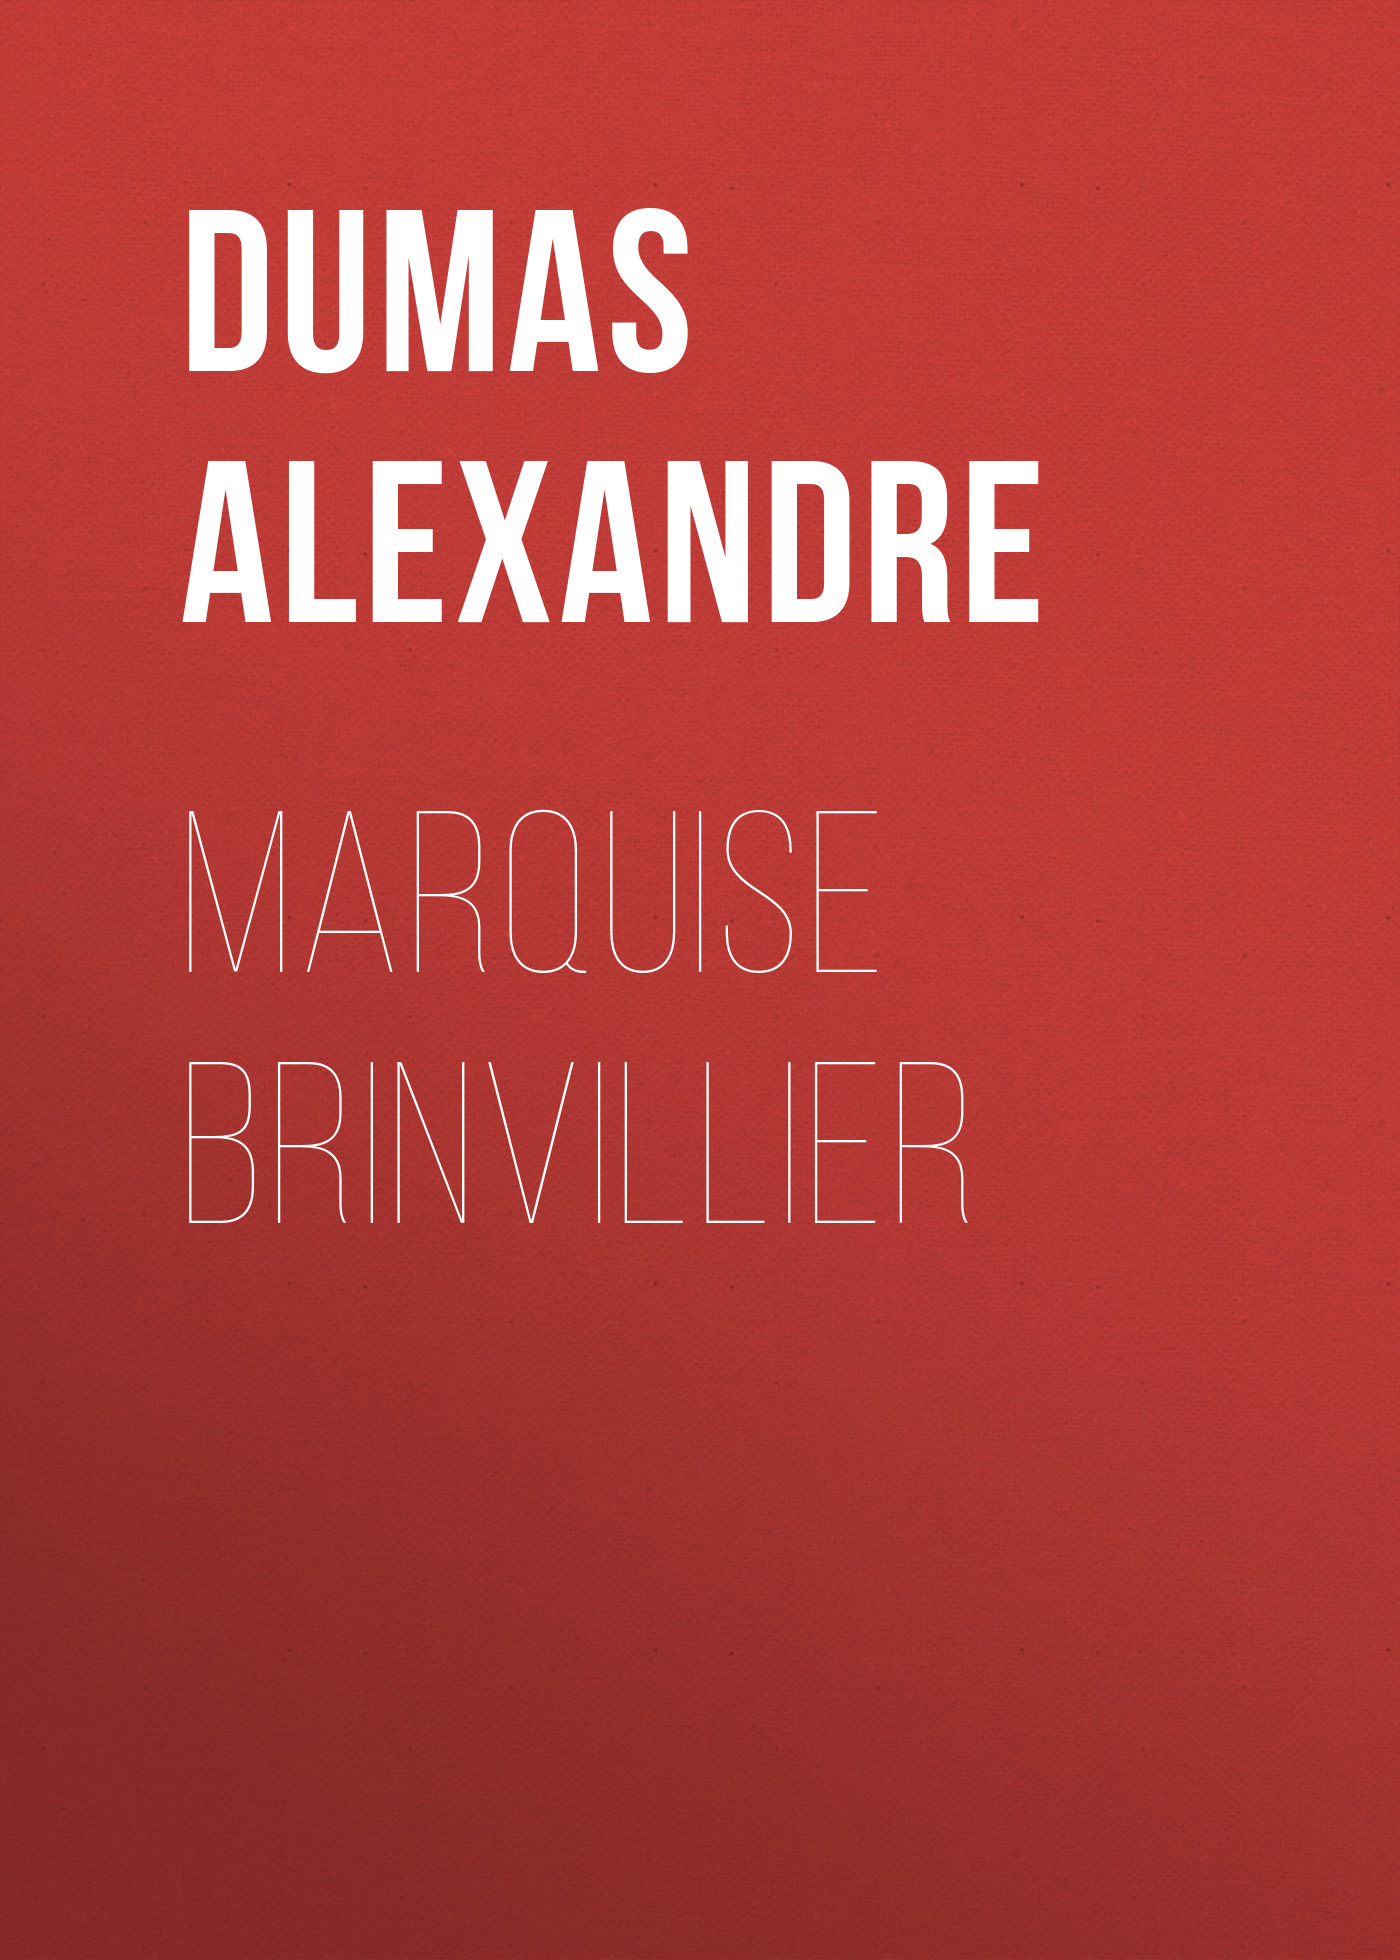 Книга Marquise Brinvillier из серии , созданная Alexandre Dumas, может относится к жанру Литература 19 века, Зарубежная старинная литература, Зарубежная классика. Стоимость электронной книги Marquise Brinvillier с идентификатором 25202815 составляет 0 руб.